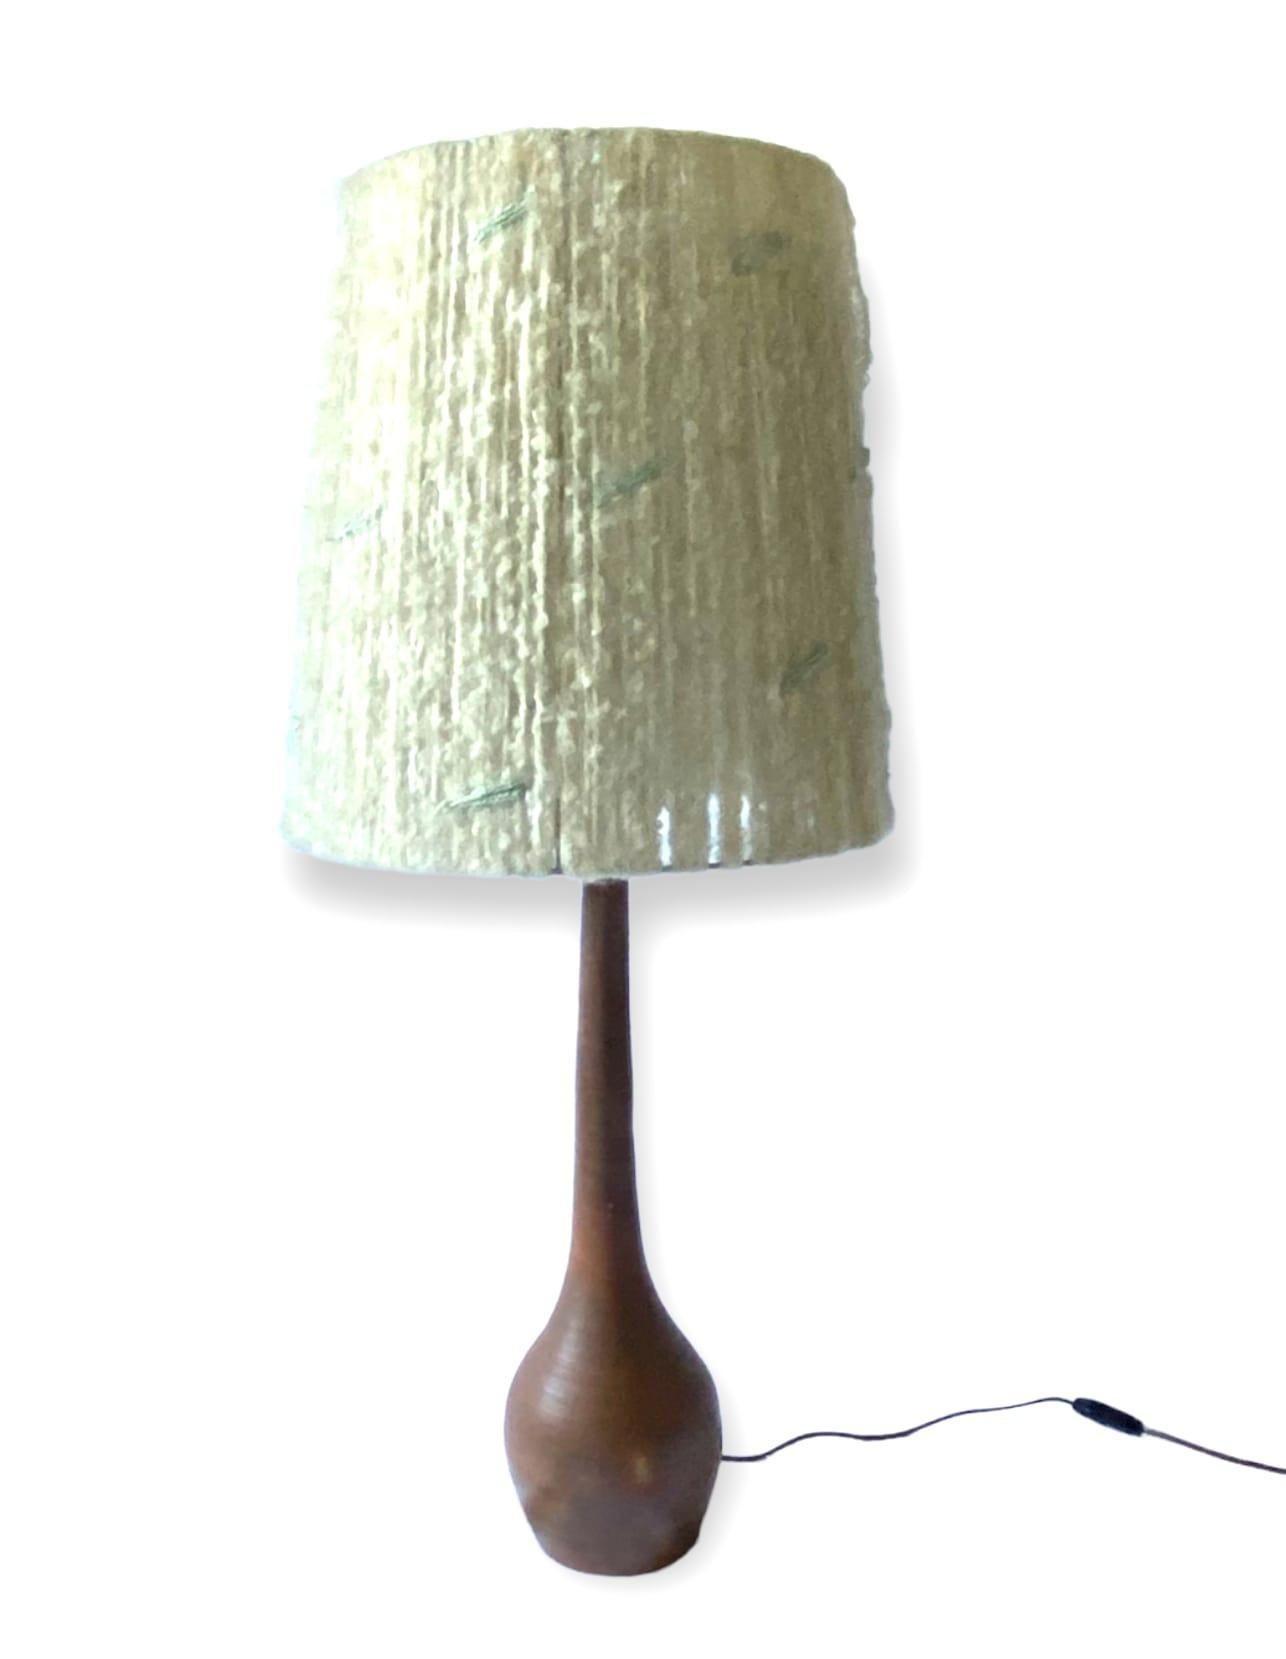 Midcentury Monumental Glazed Terracotta Table Lamp, France, 1950s For Sale 7